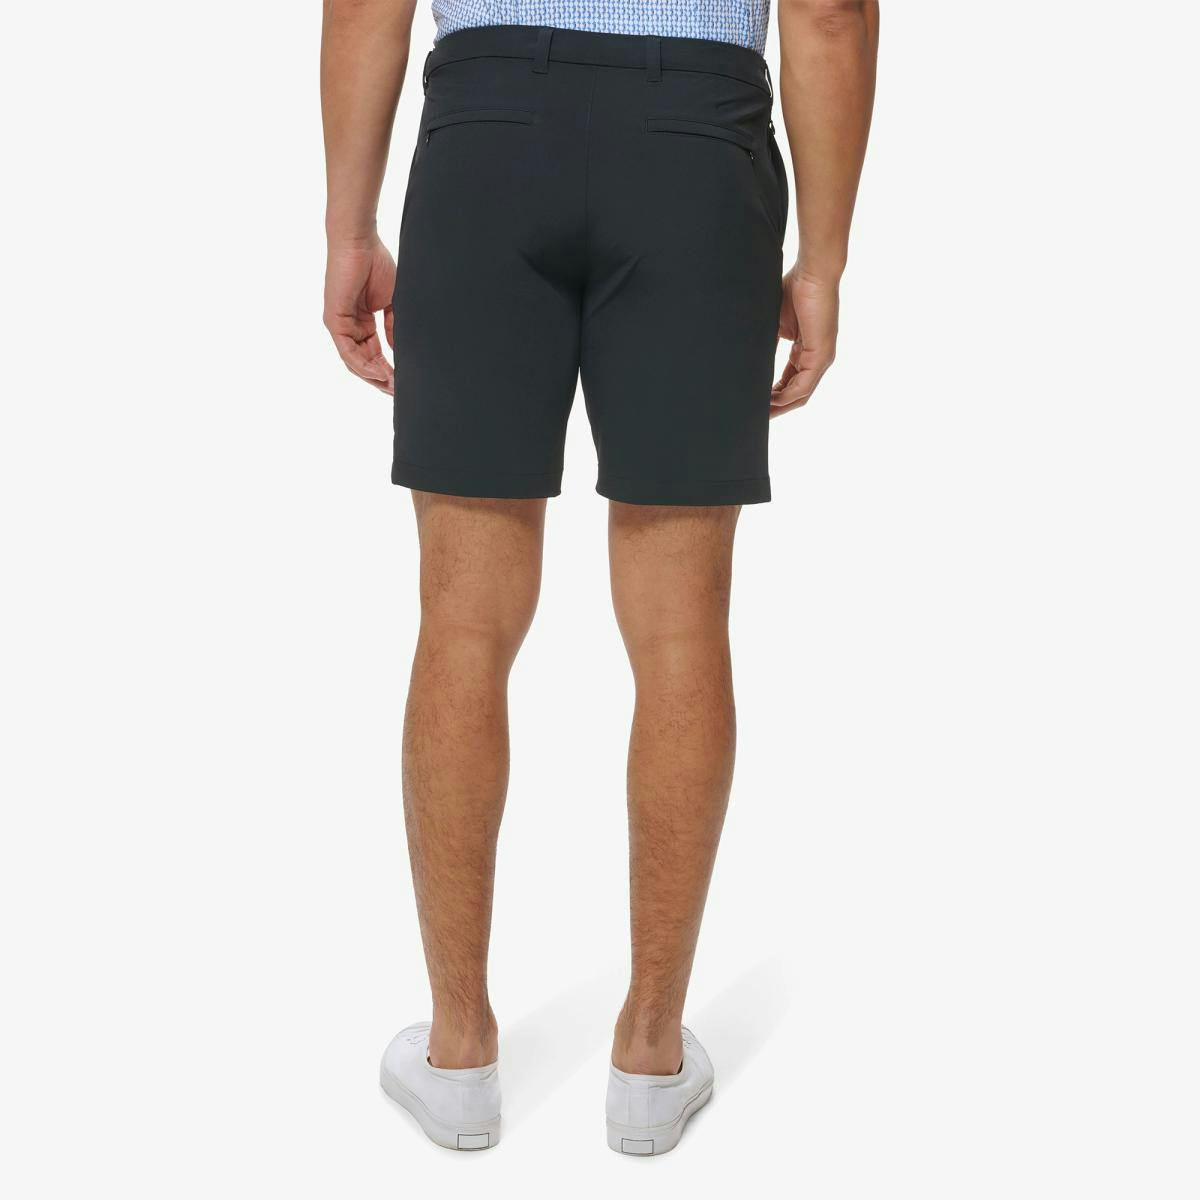 Helmsman Shorts - Product Image 3